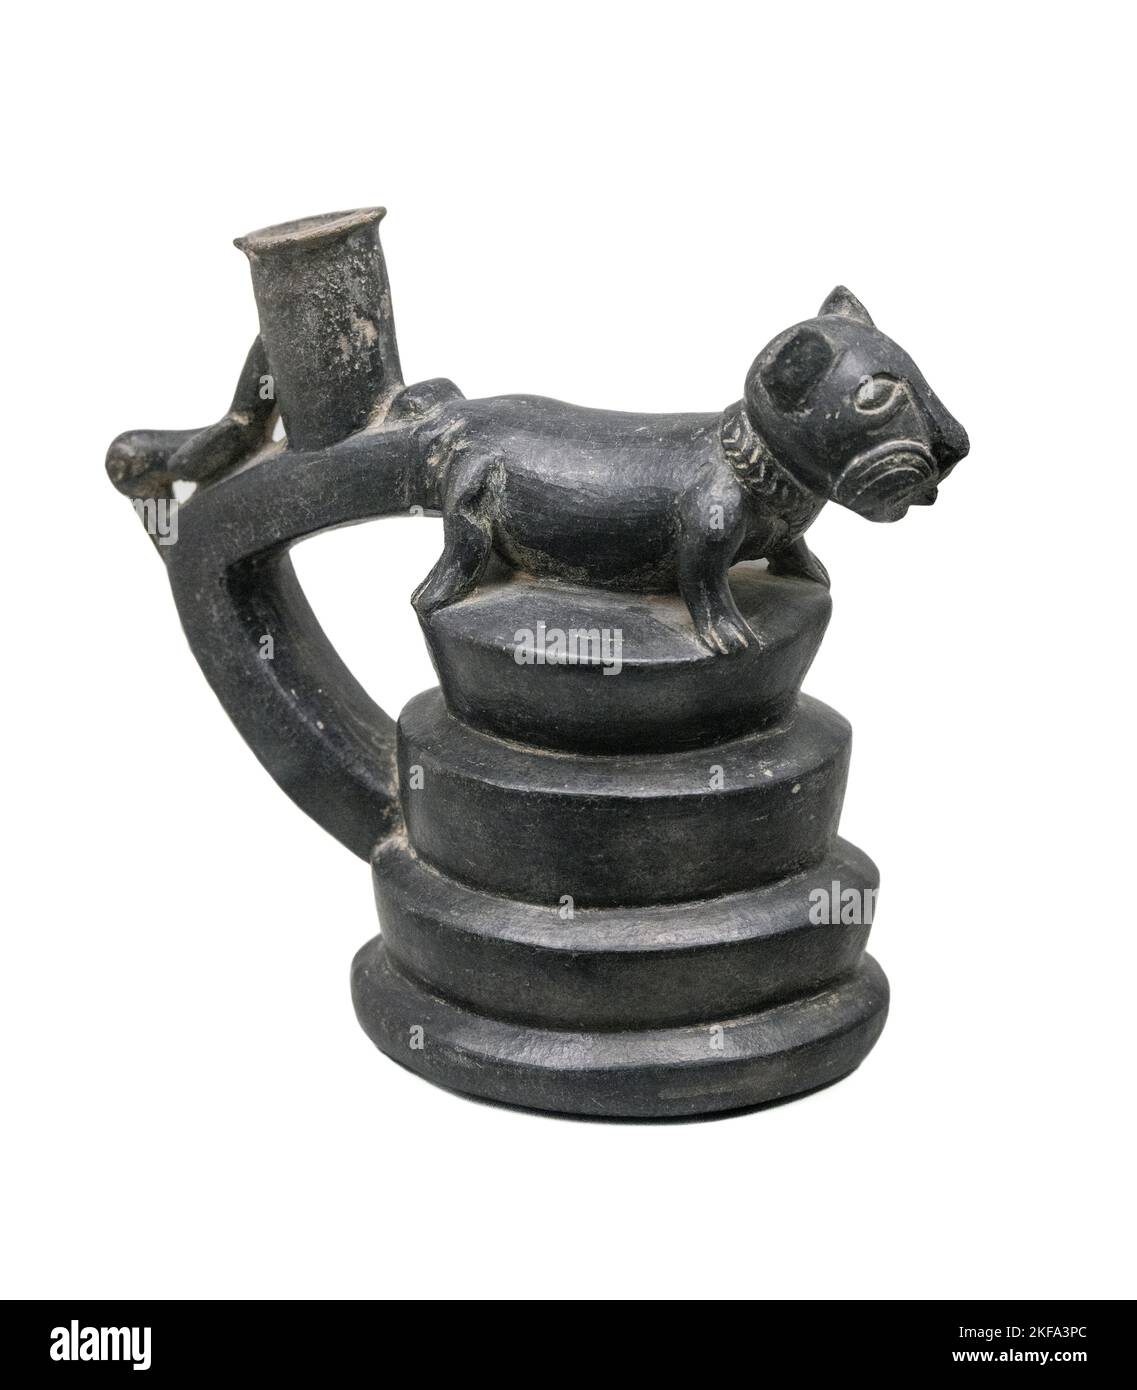 Jarrón o maceta zoomórfica de cerámica que representa a un gato en un templo del reino Chimor o cultura Chimú del Perú. Entre 1100 y 1400 dC Foto de stock